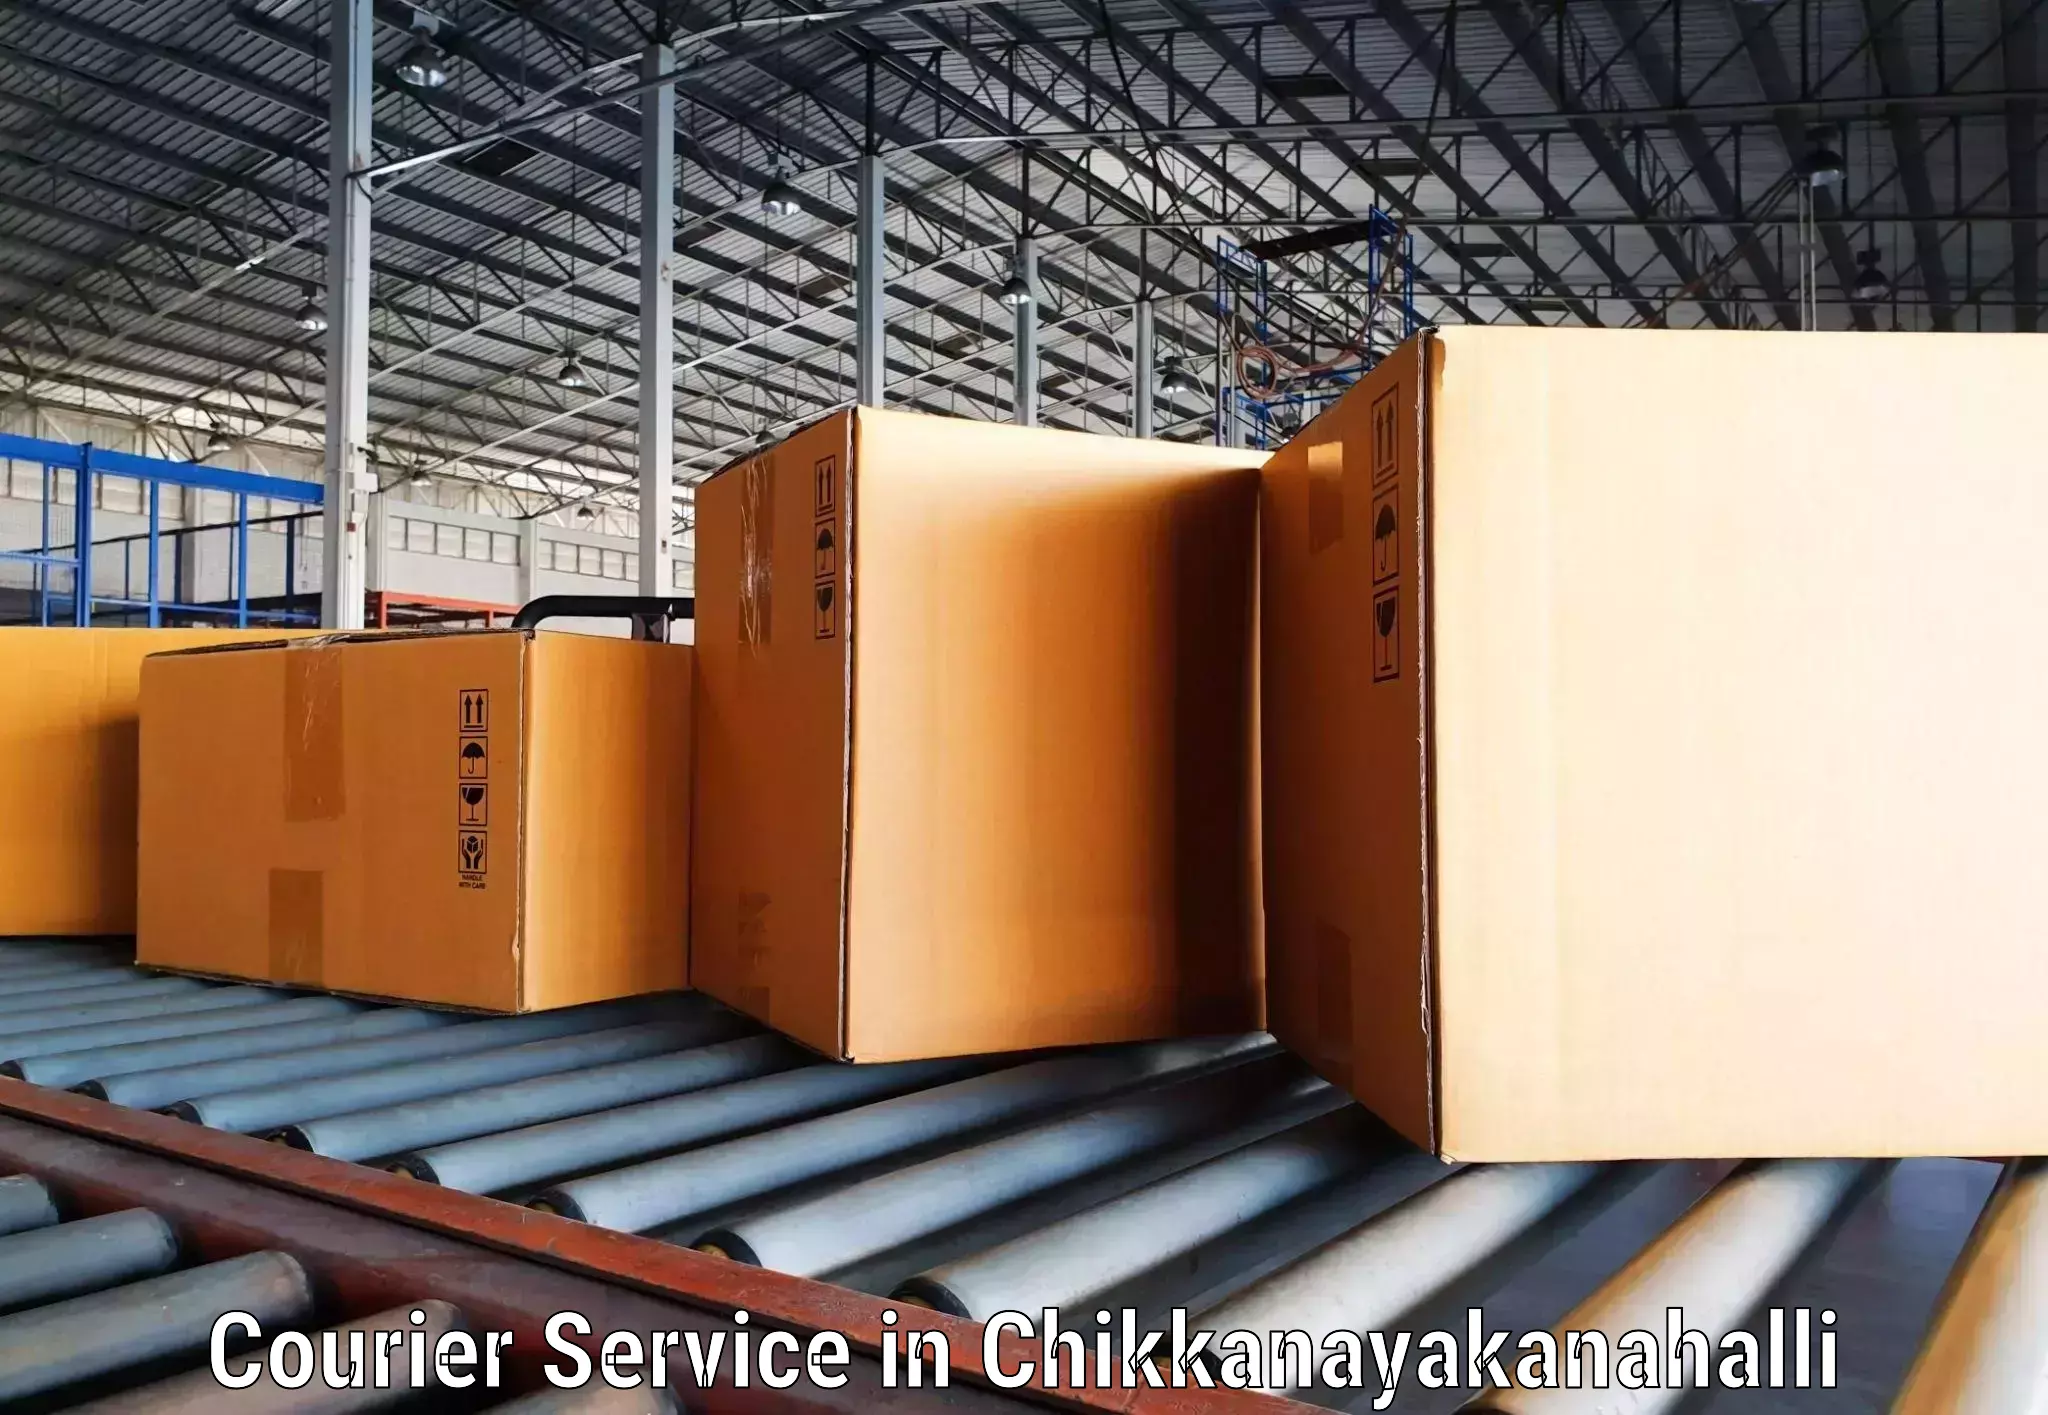 High-efficiency logistics in Chikkanayakanahalli